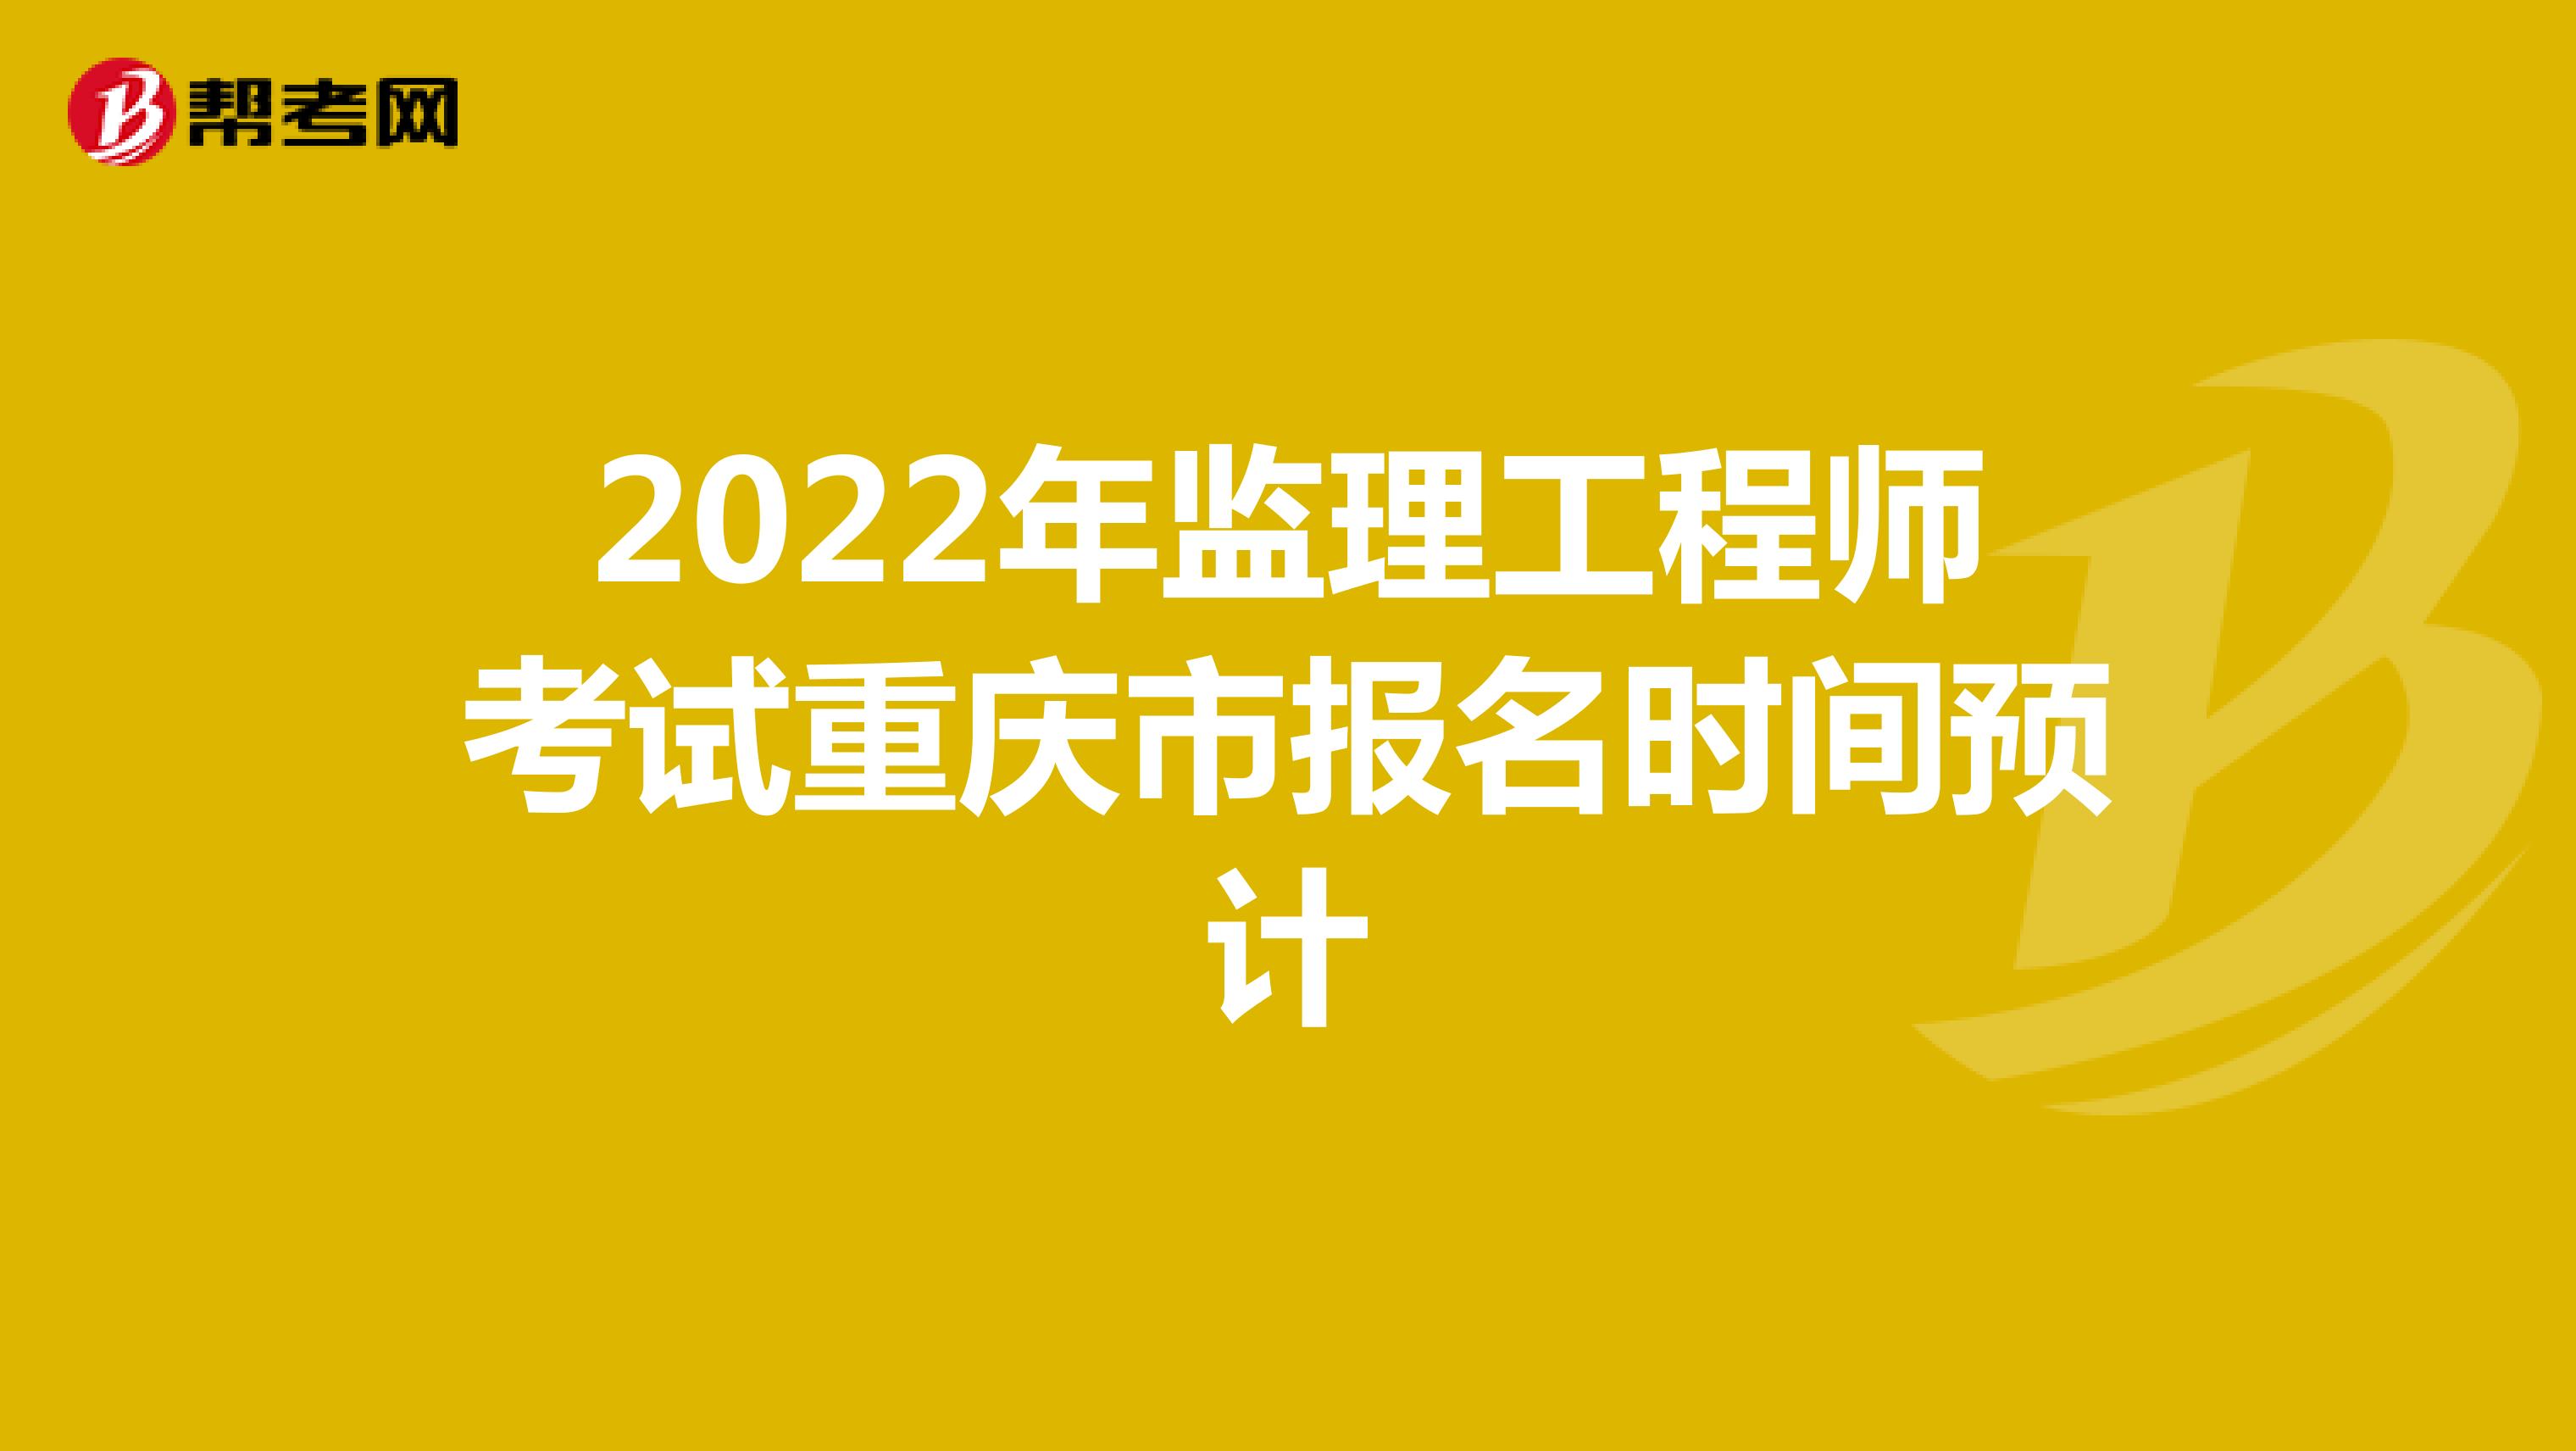 2022年监理工程师考试重庆市报名时间预计